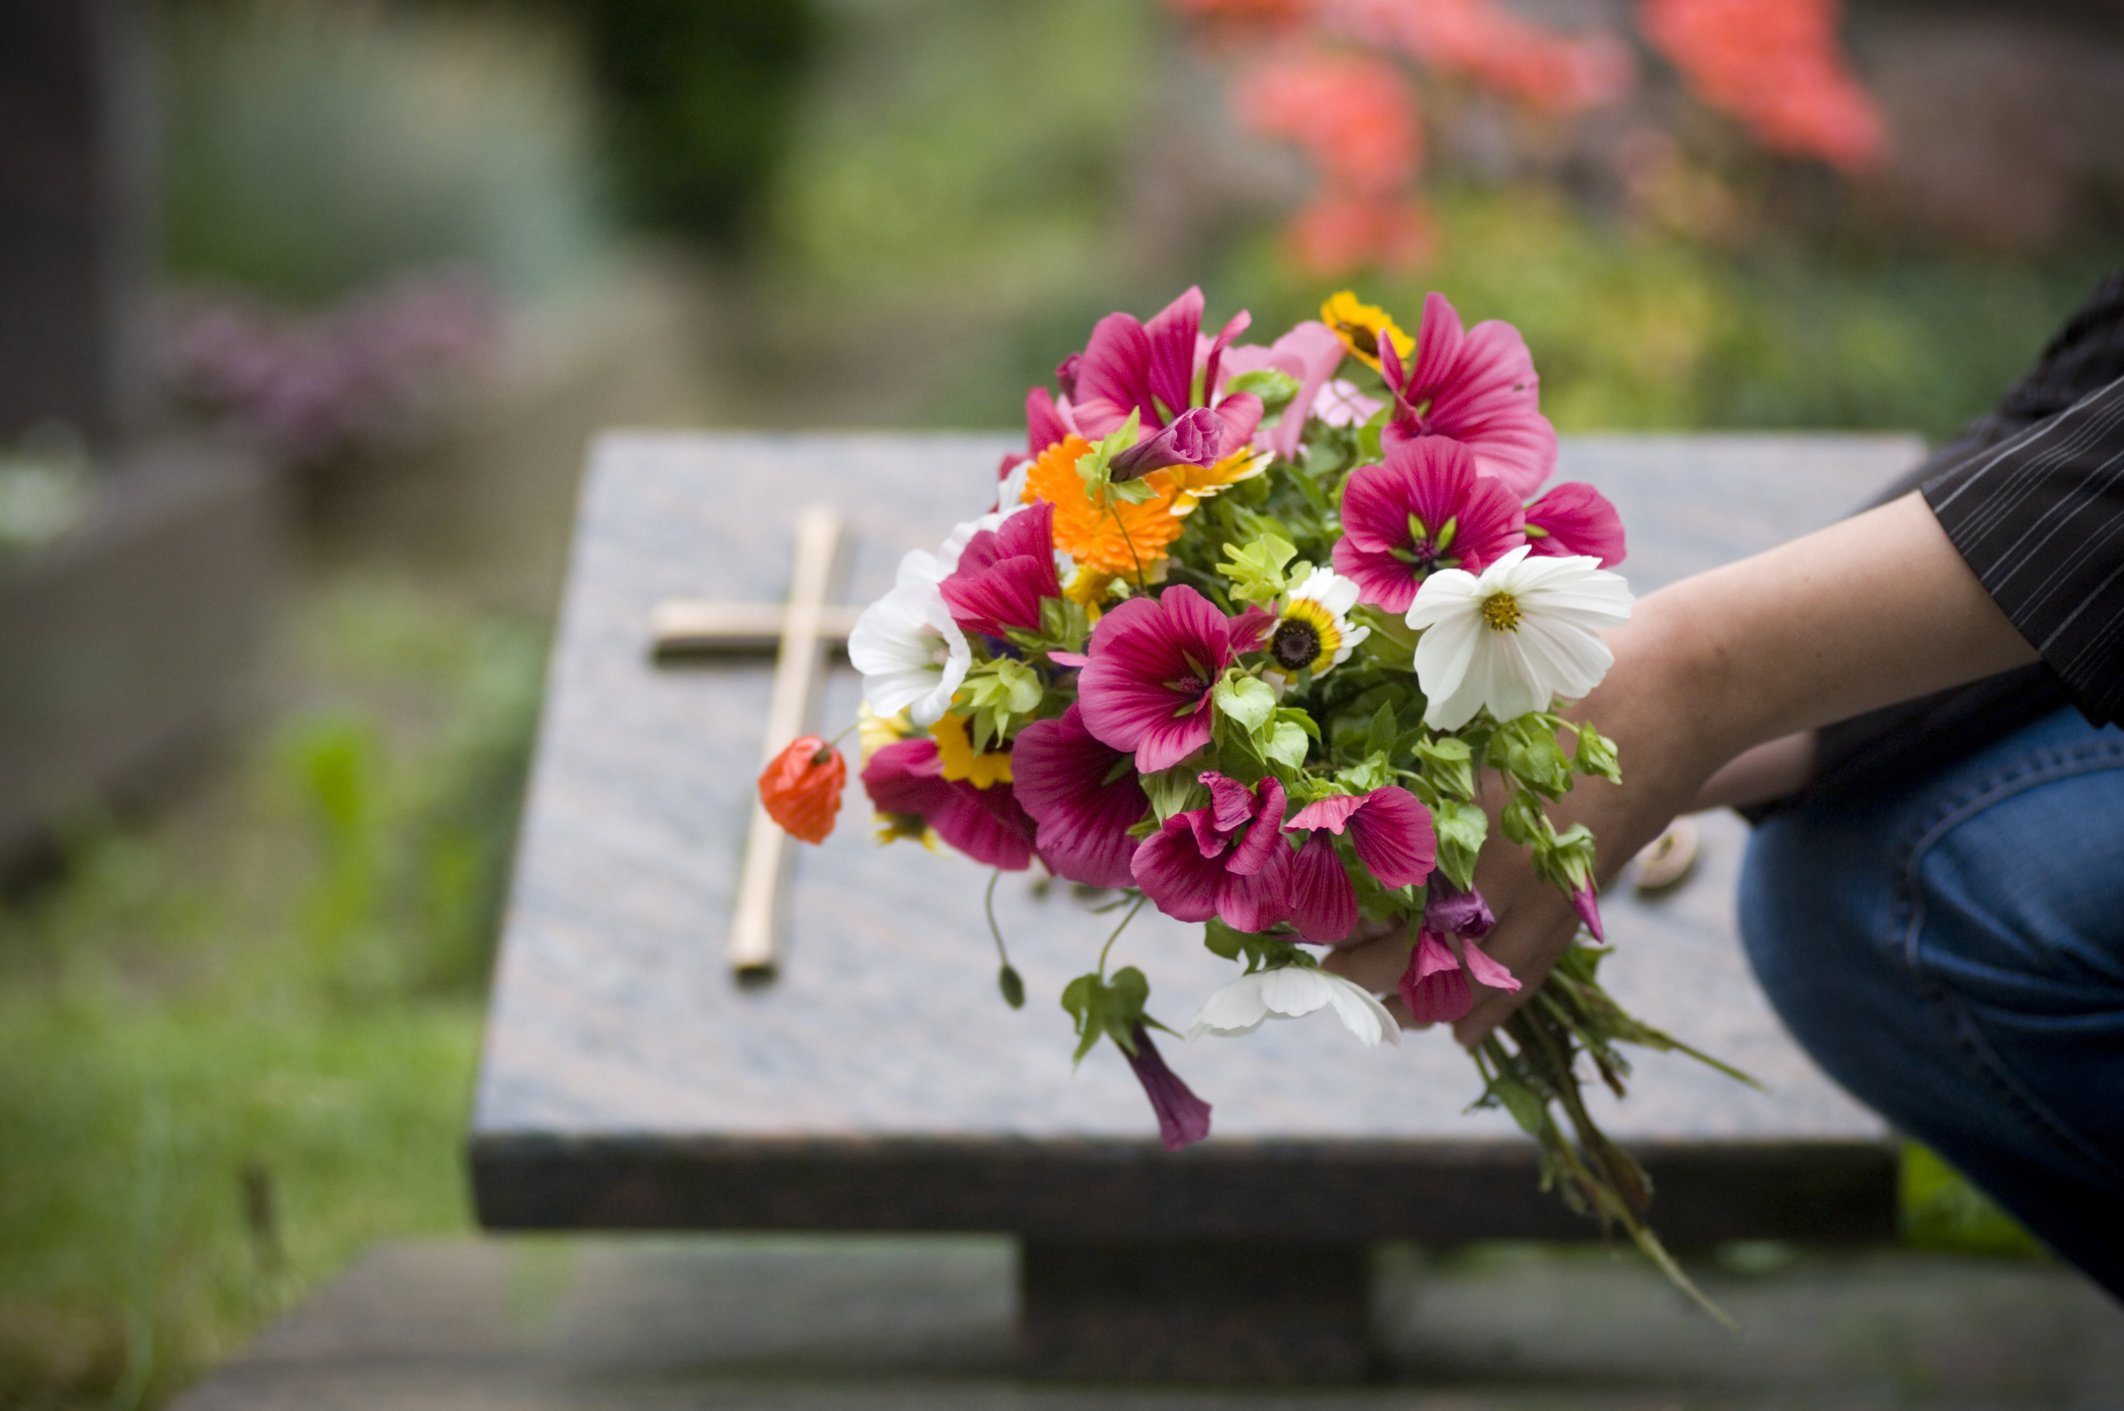 Prudence apportait régulièrement des fleurs sur la tombe de sa sœur. | Photo : Getty Images